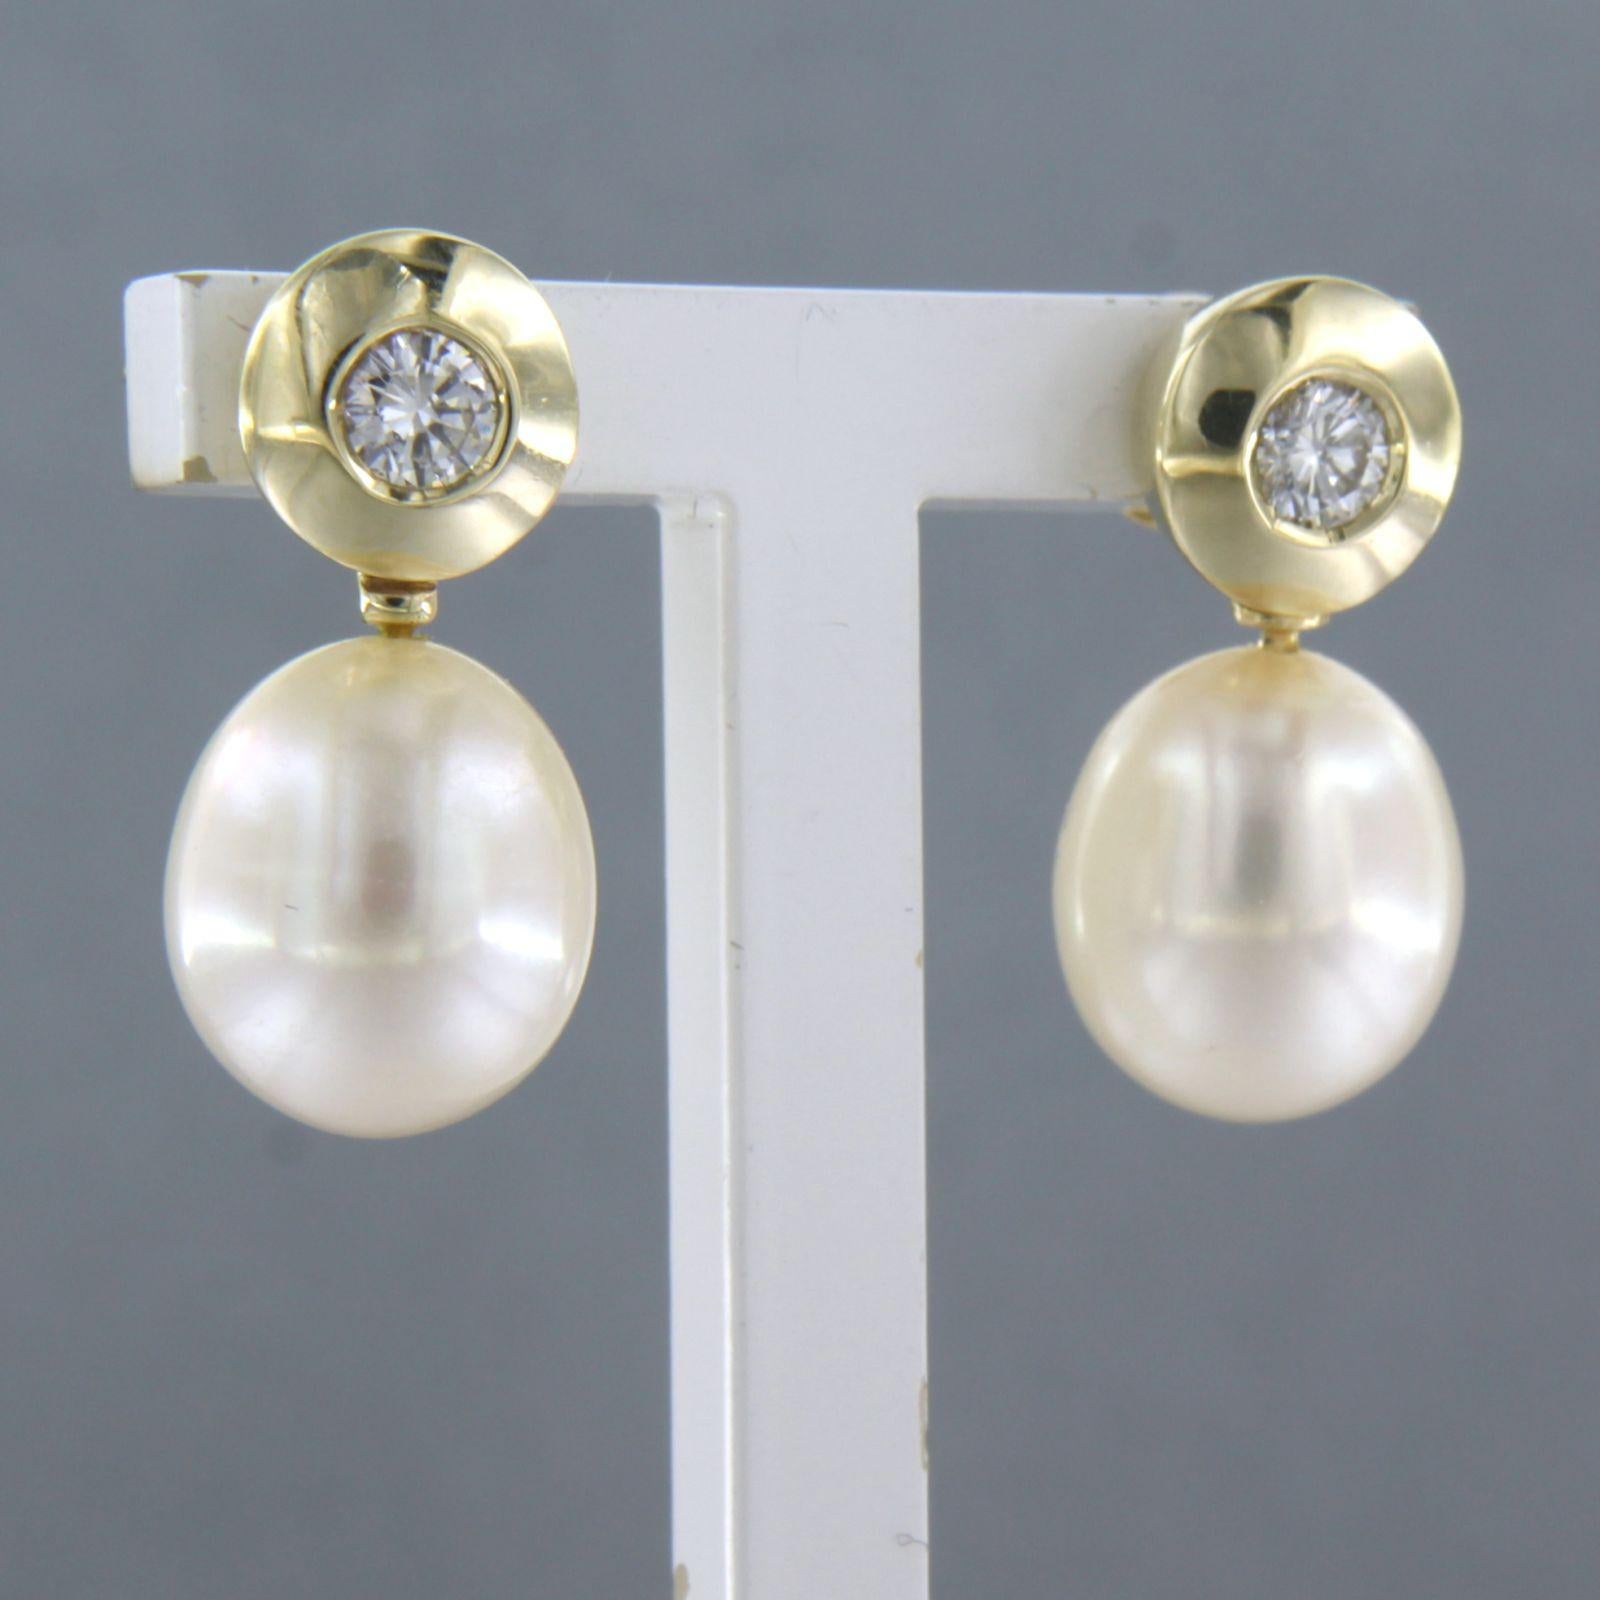 Boucles d'oreilles en or jaune 14k serties d'une perle et d'un diamant taille brillant 0.30ct - F/G - VS/SI

Description détaillée :

Les boucles d'oreilles mesurent 2,0 cm de haut et 9,4 mm de large.

Poids total 3,1 grammes

set avec

- 2 x 1,1 cm